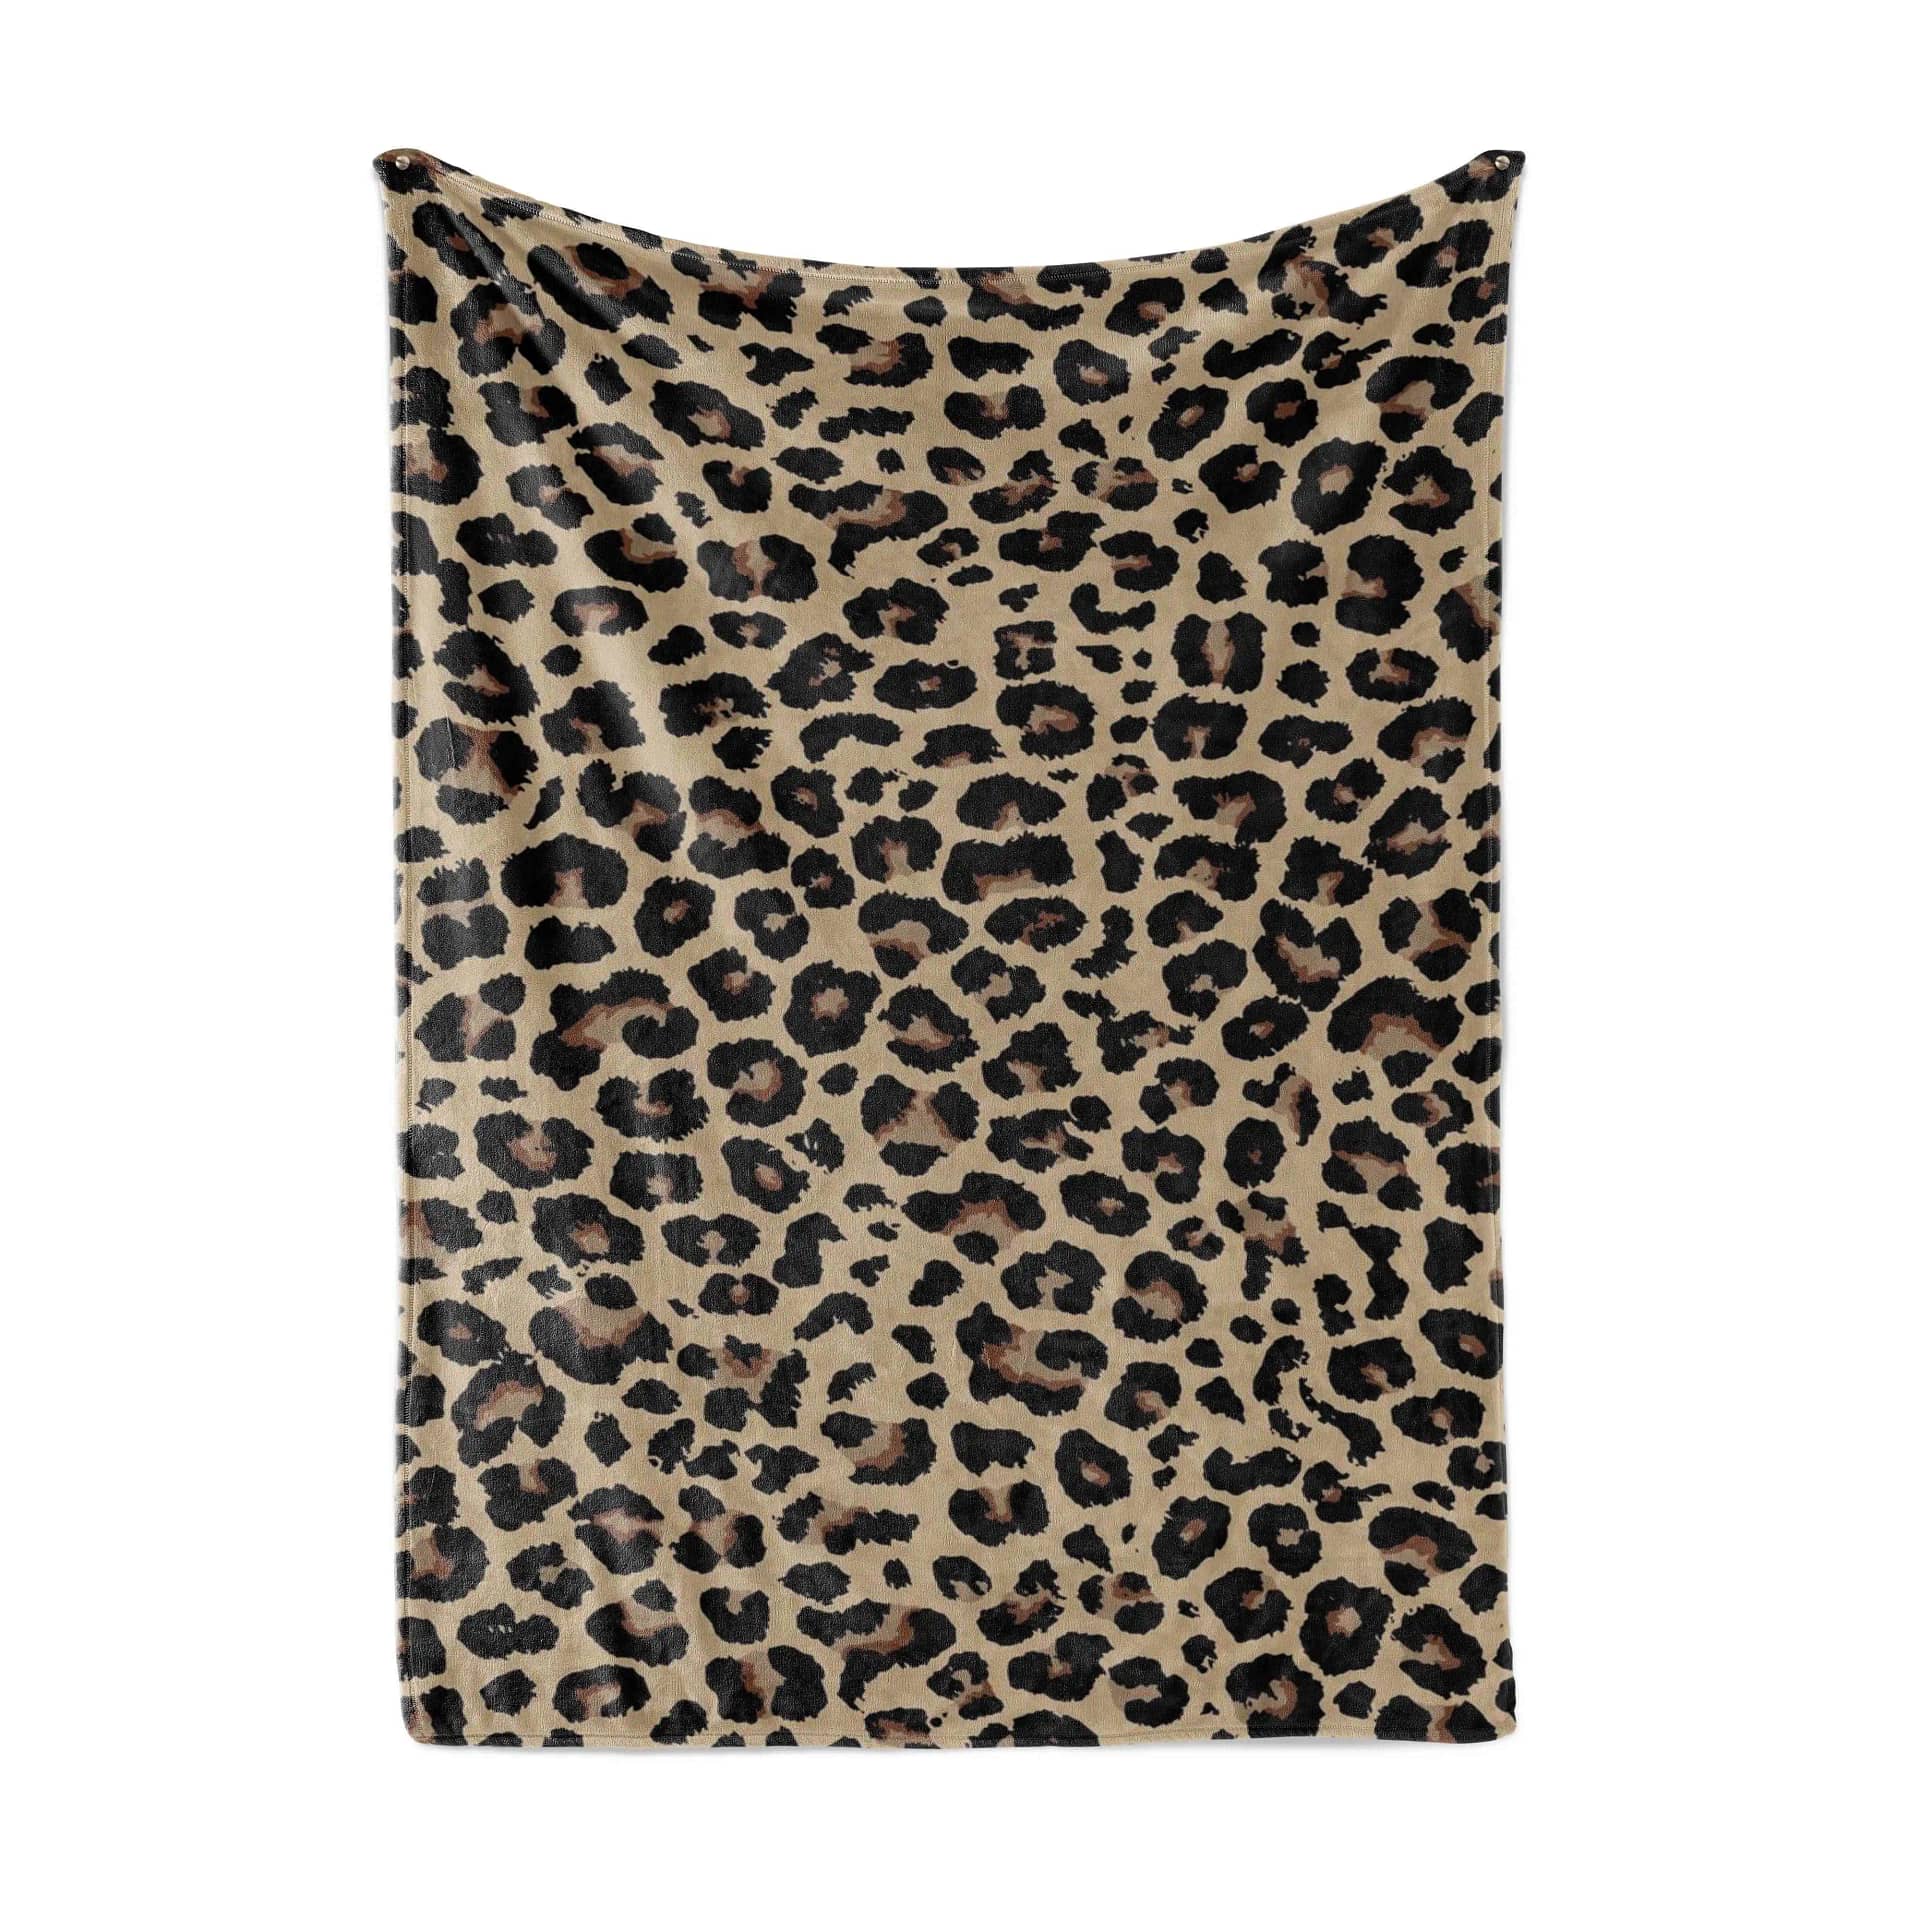 Leopard Skin Living Room Area Amazon No4012 Fleece Blanket